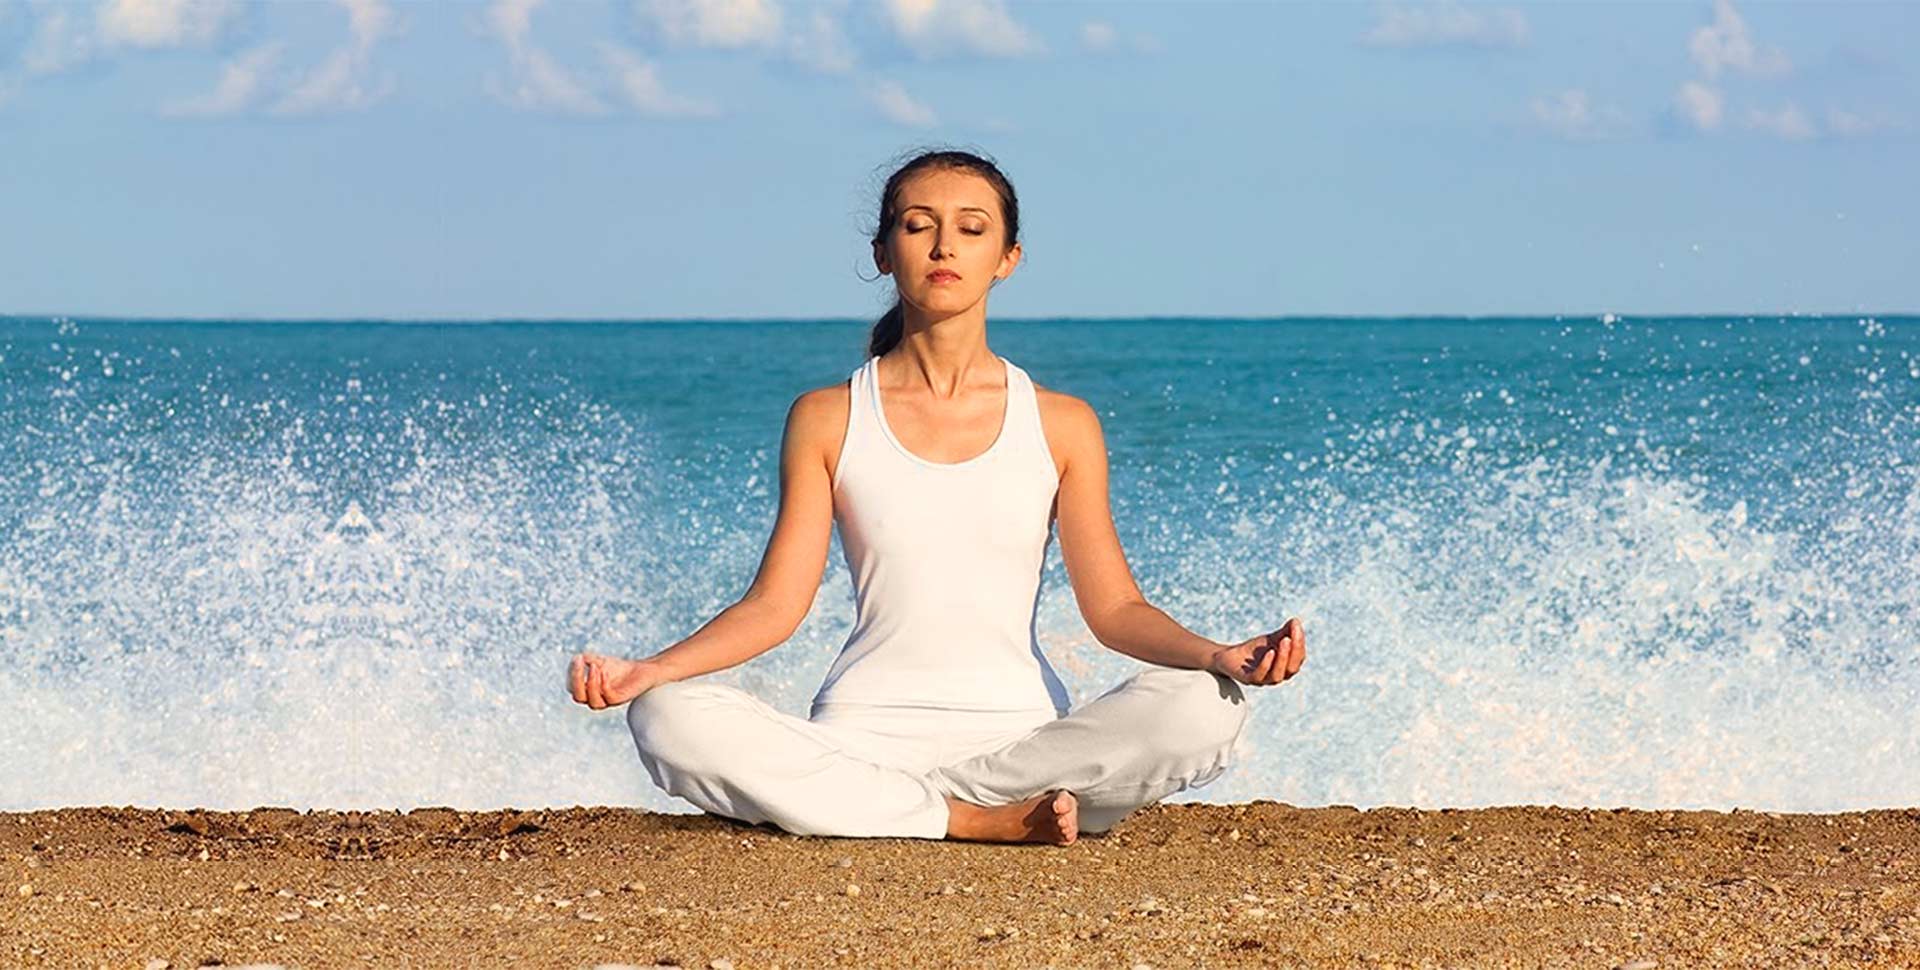 Релаксация дыханием. Медитация на берегу моря. Медитация на море. Девушка медитирует на берегу моря. Йога на берегу моря.